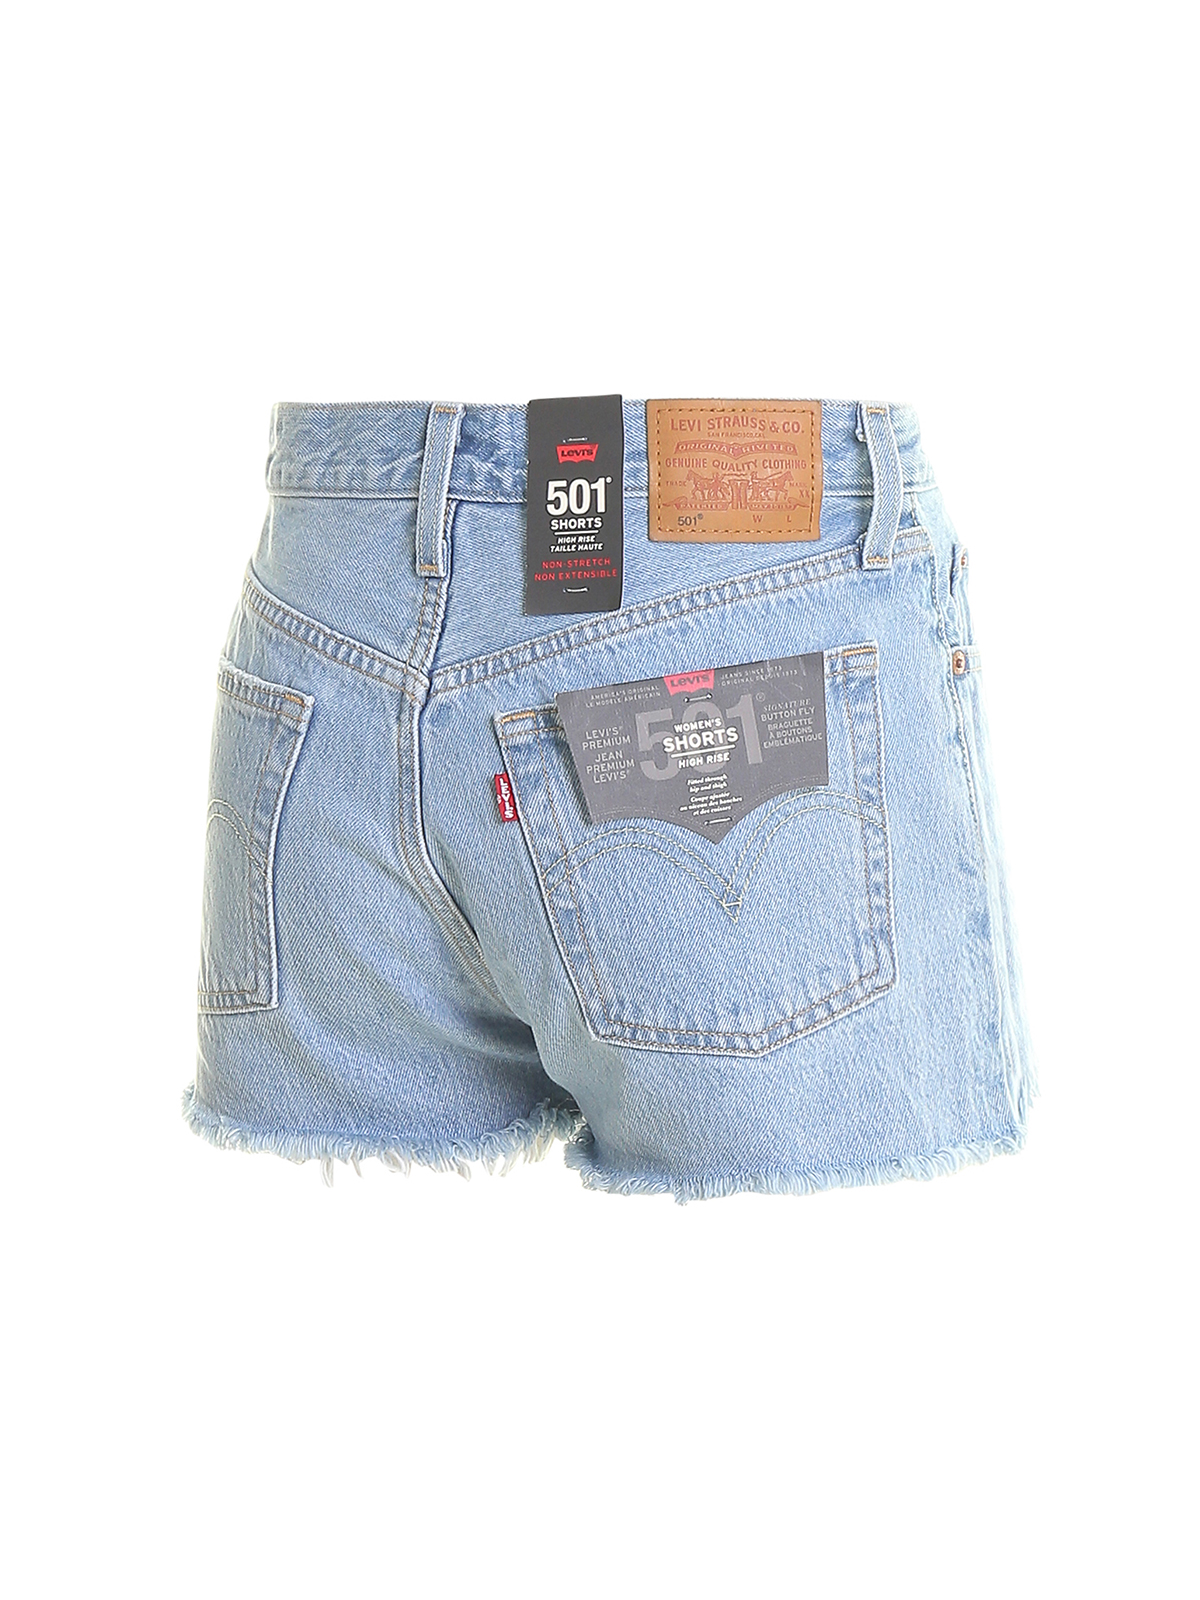 Trousers Shorts Levi'S - 501 fringed denim shorts - 563270086 